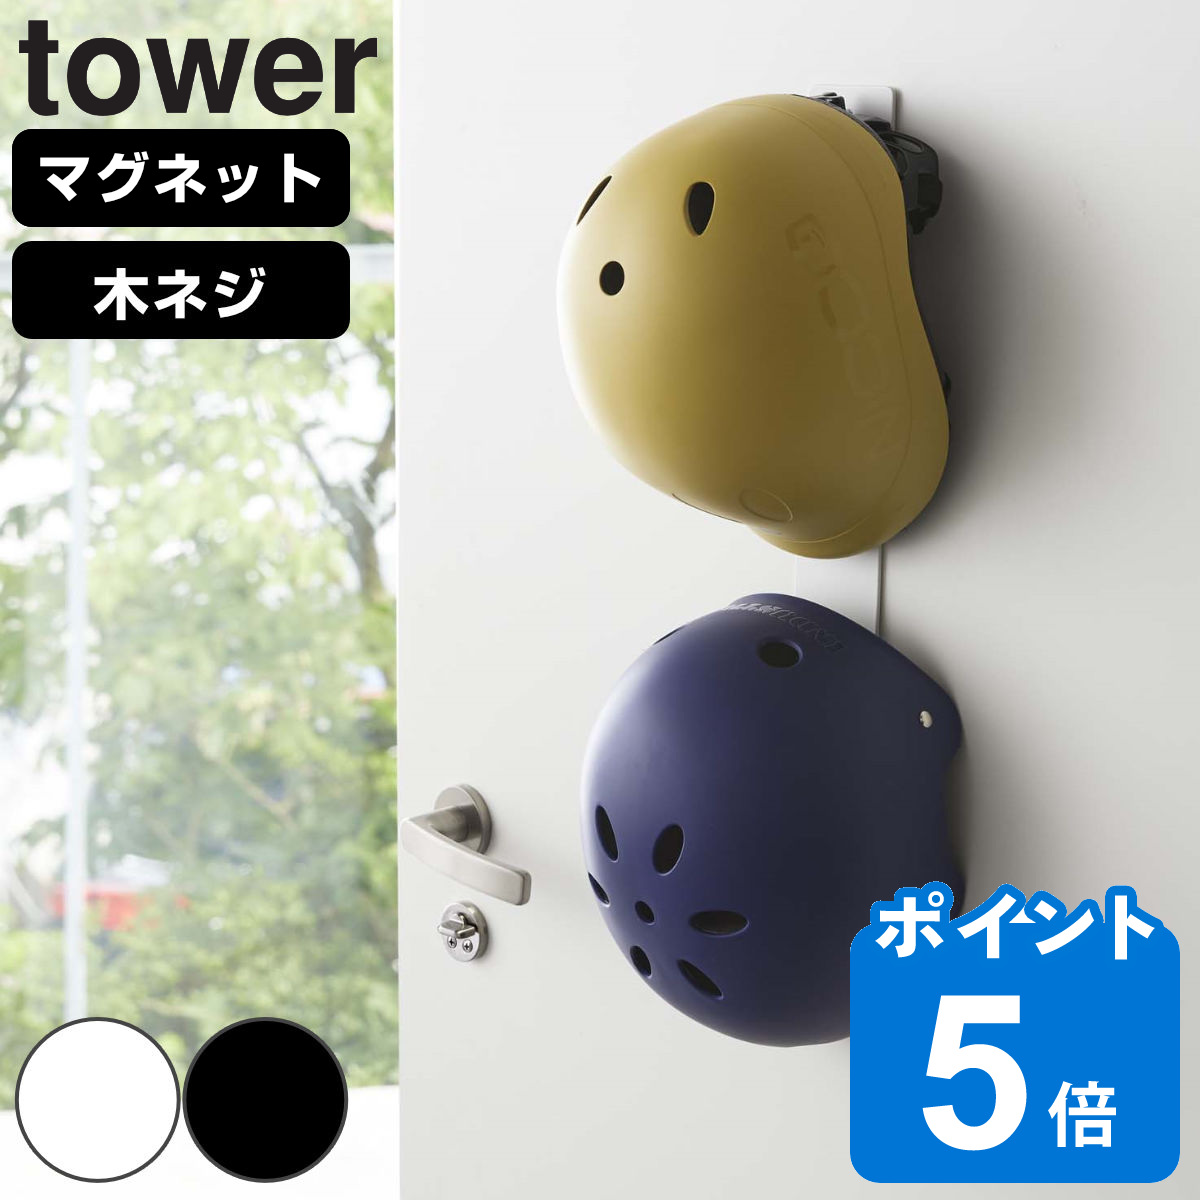 山崎実業 tower マグネットキッズヘルメットフック タワー